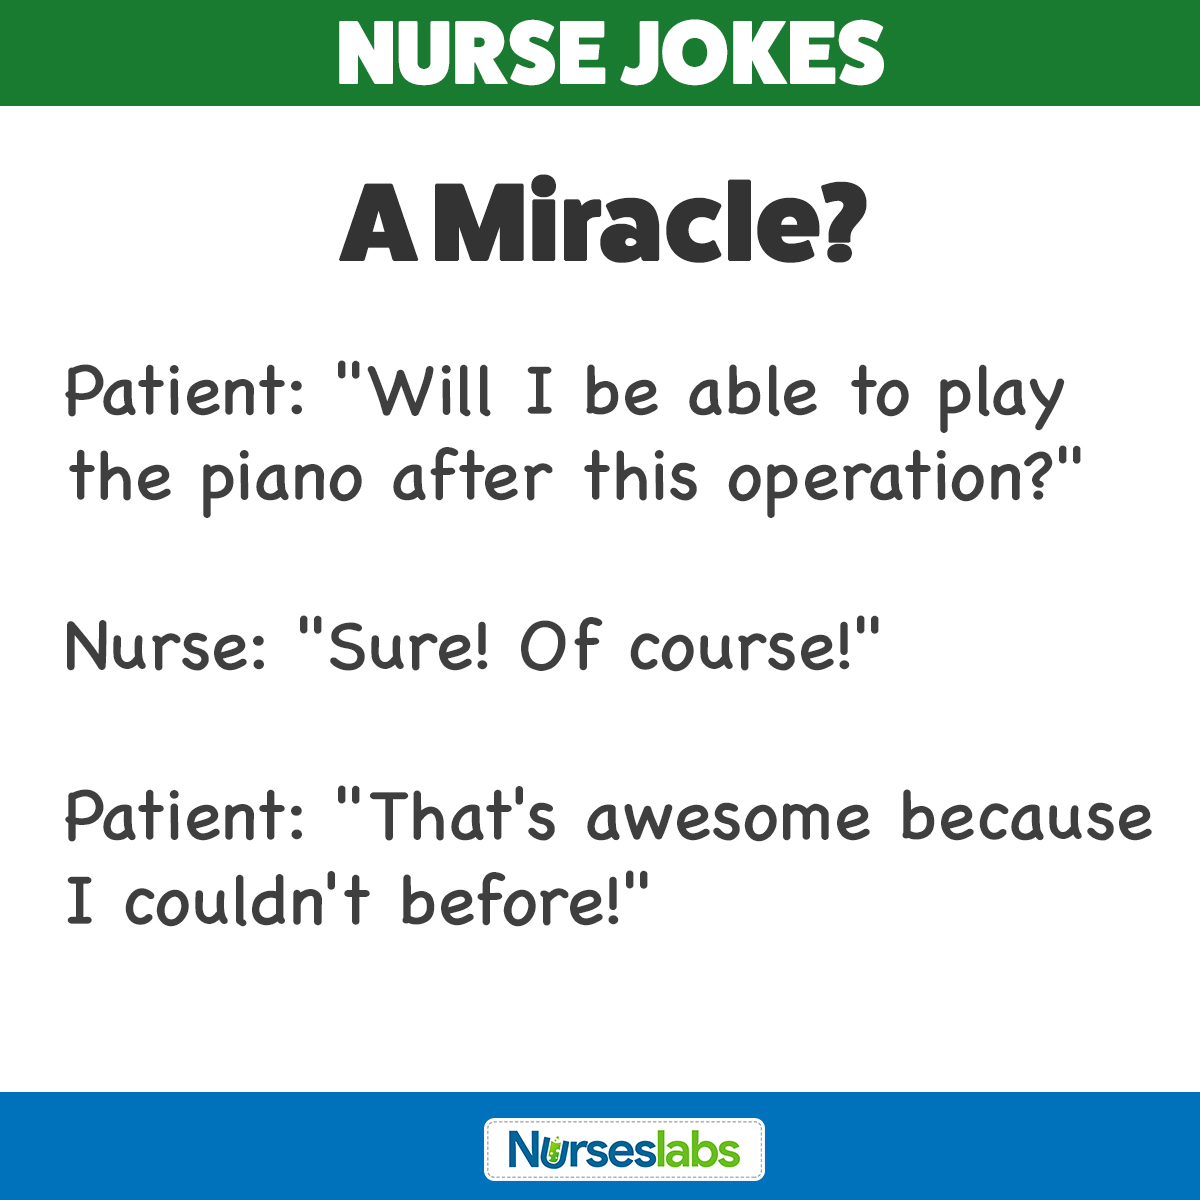 registered nurse jokes